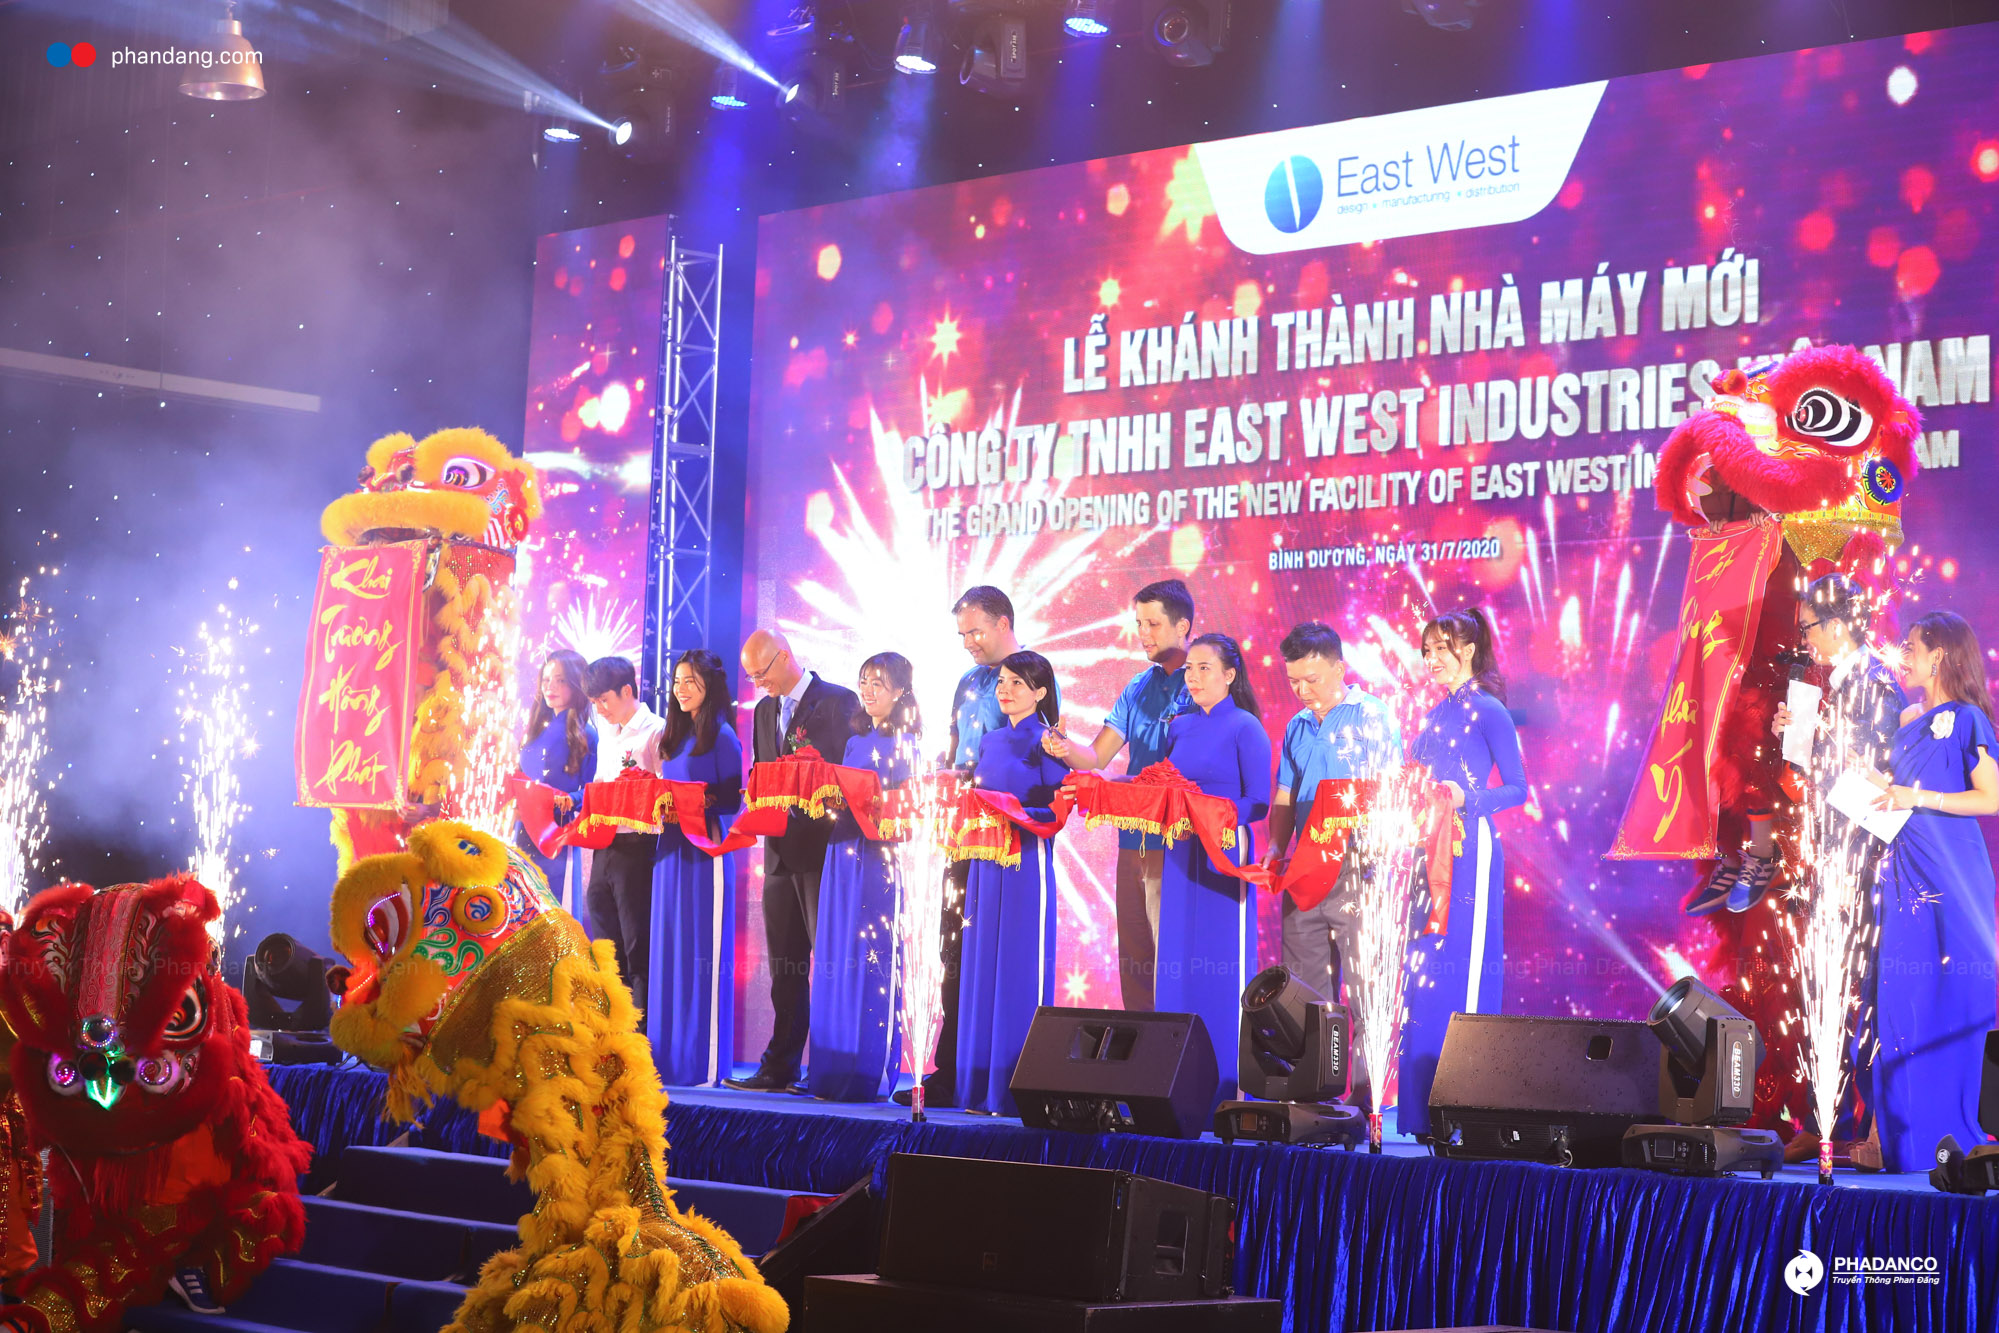 Tổ chức lễ khánh thành nhà máy mới East West Industries Việt Nam thành công